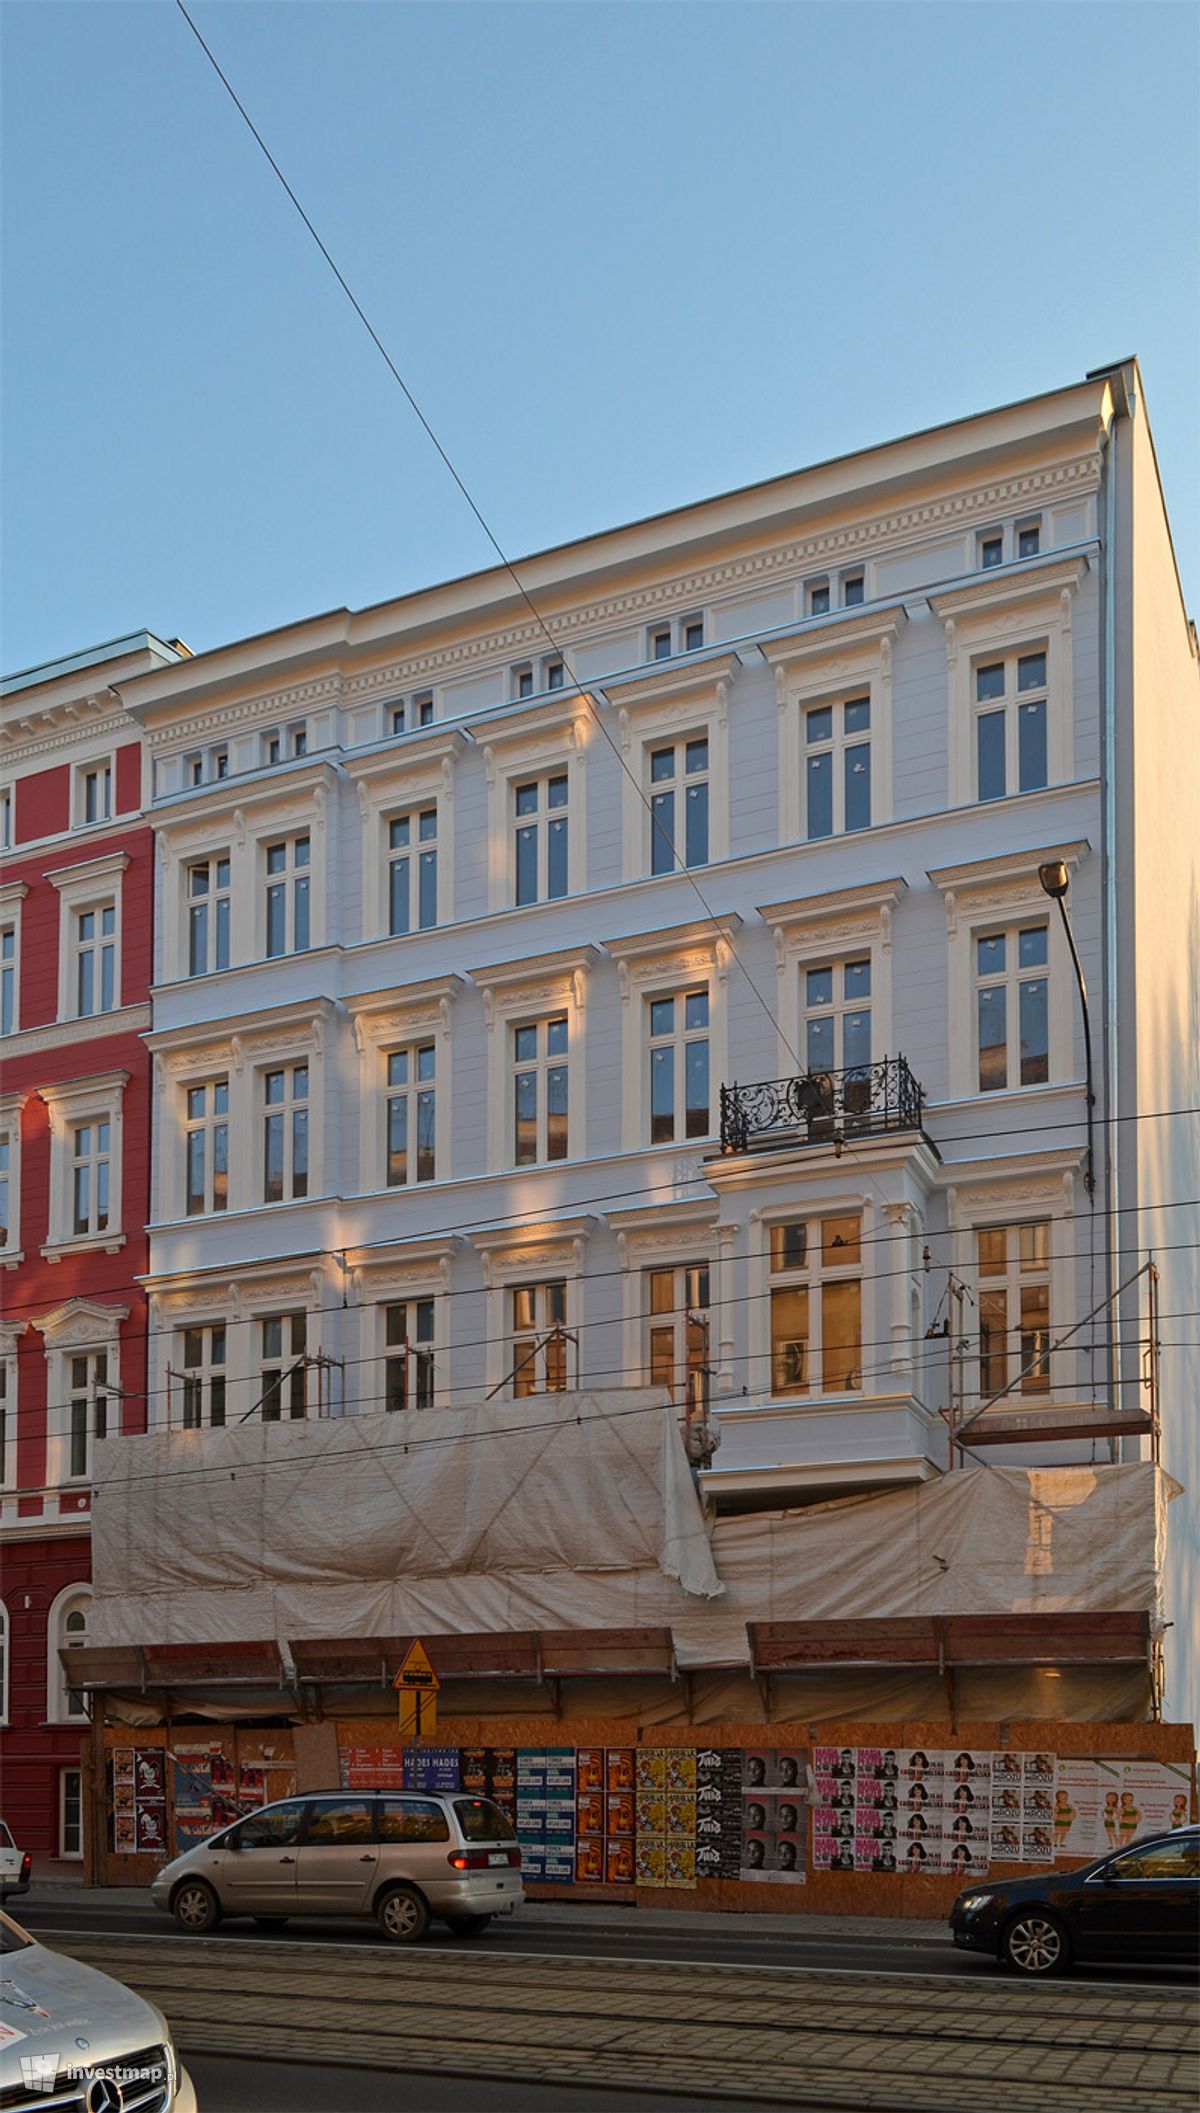 Zdjęcie [Wrocław] Apartamenty "Piłsudskiego 89 i 91" fot. alsen strasse 67 